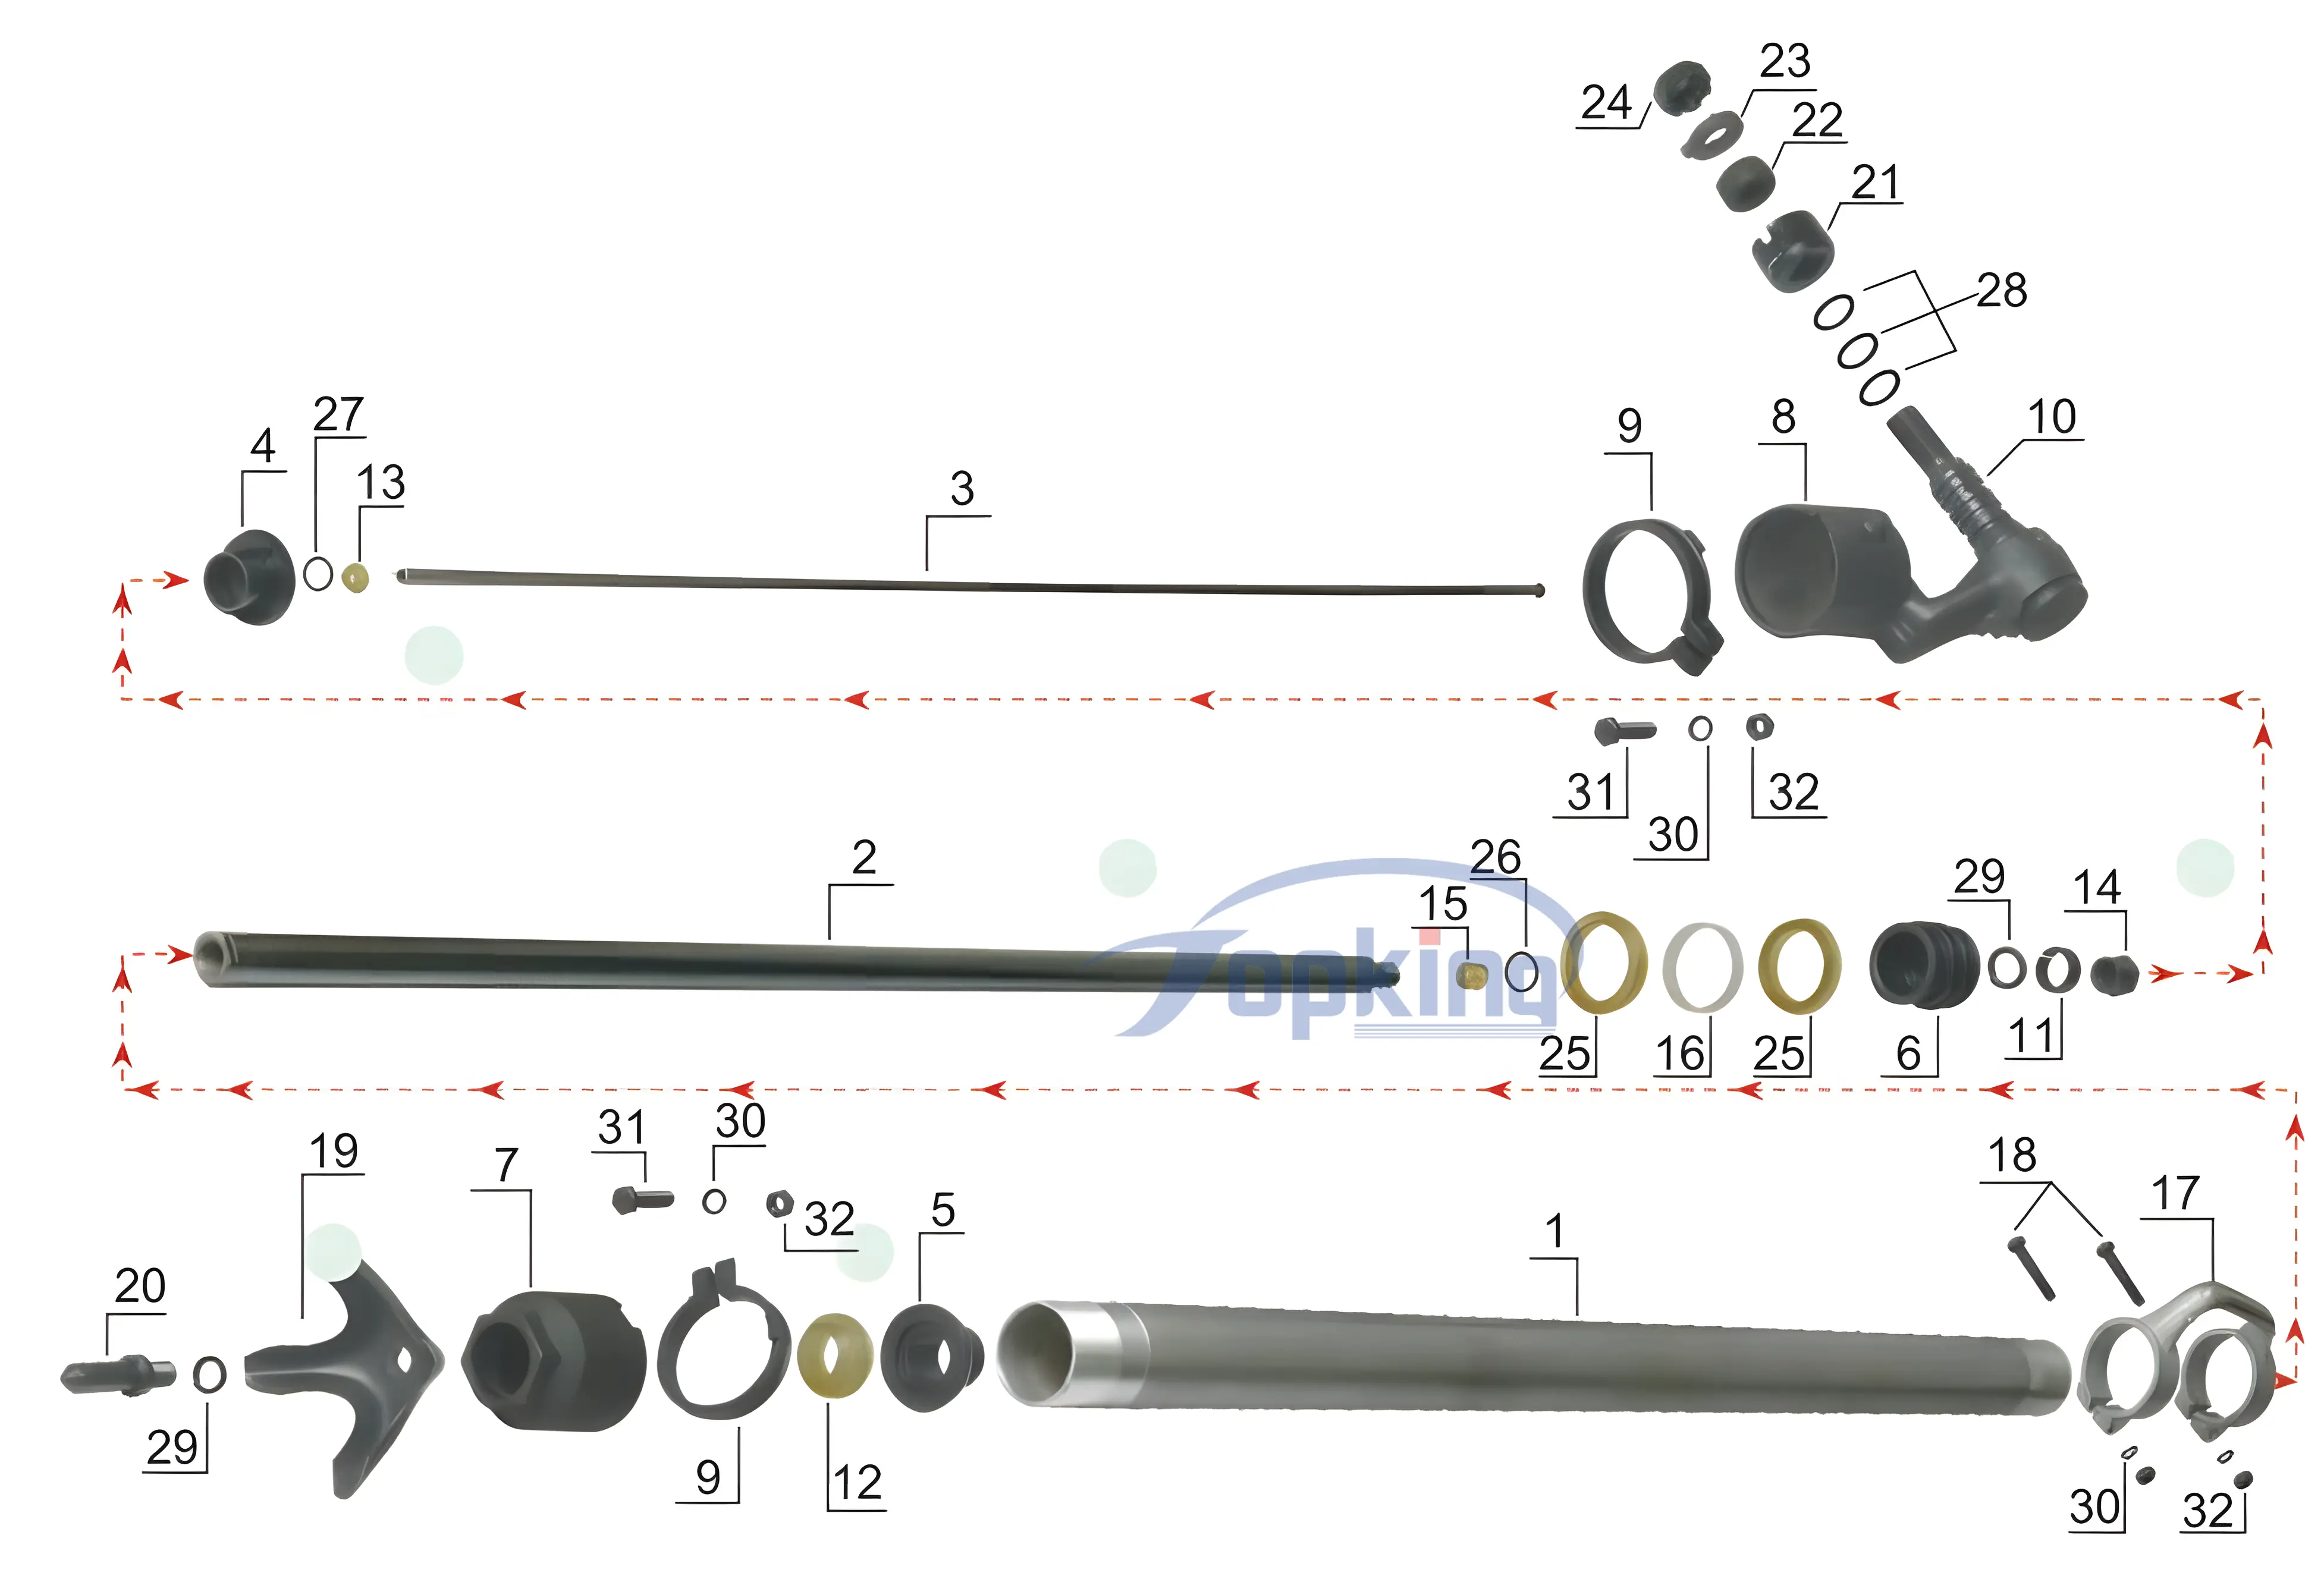 FT160BC air leg decomposition diagram.png